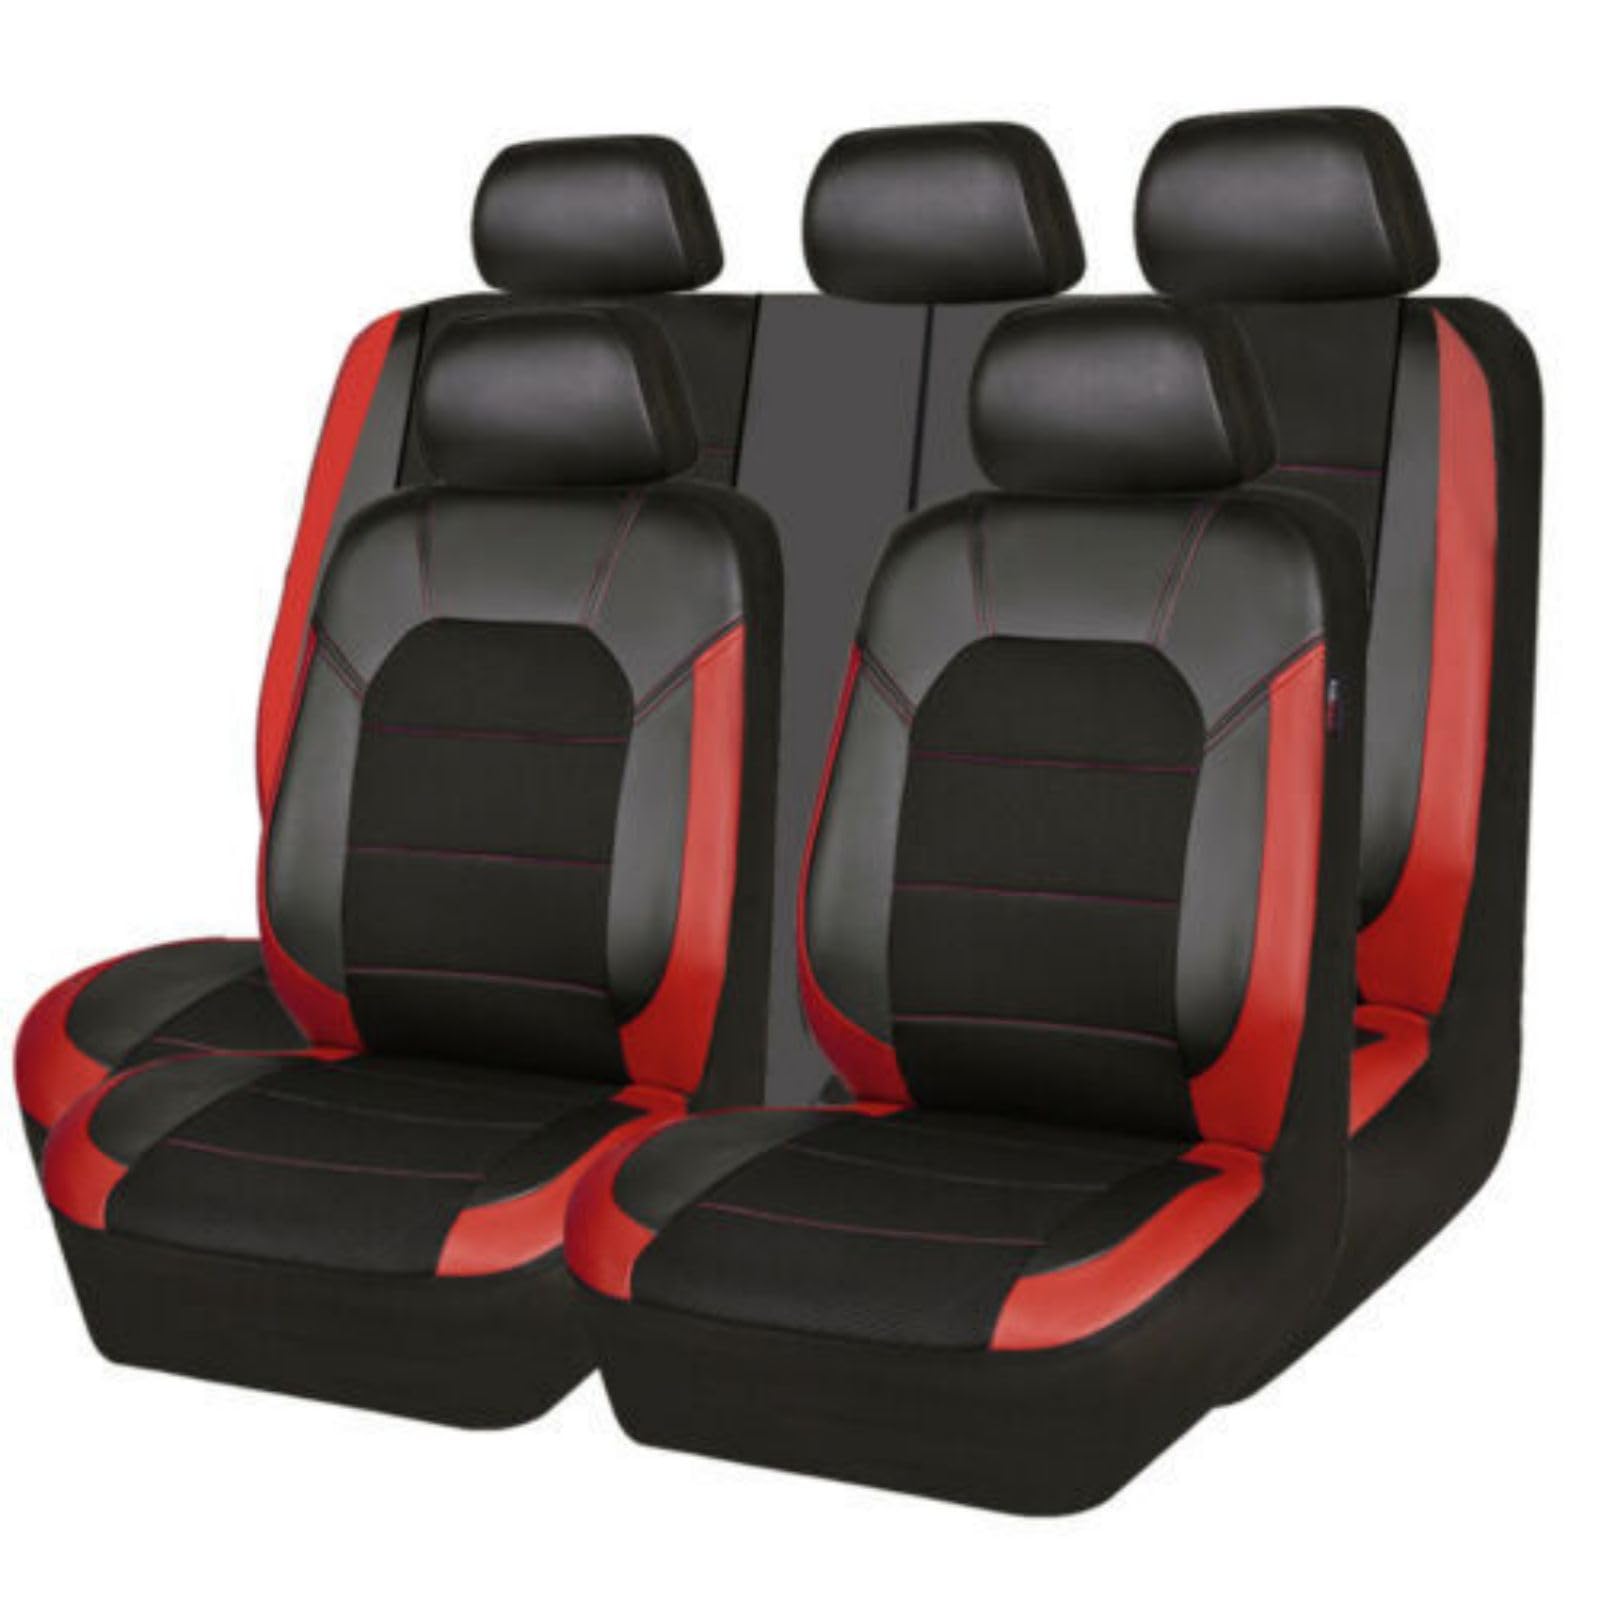 KHXLZY88 Auto-Sitzbezüge Sets für Audi Q3 S-Line/Q3 Quattro/Q3 Sportback/Q5/Q5, Wasserdicht Bequem Rutschfester Leicht Reinigen Schonbezüge Innenraum Zubehör,Red von KHXLZY88